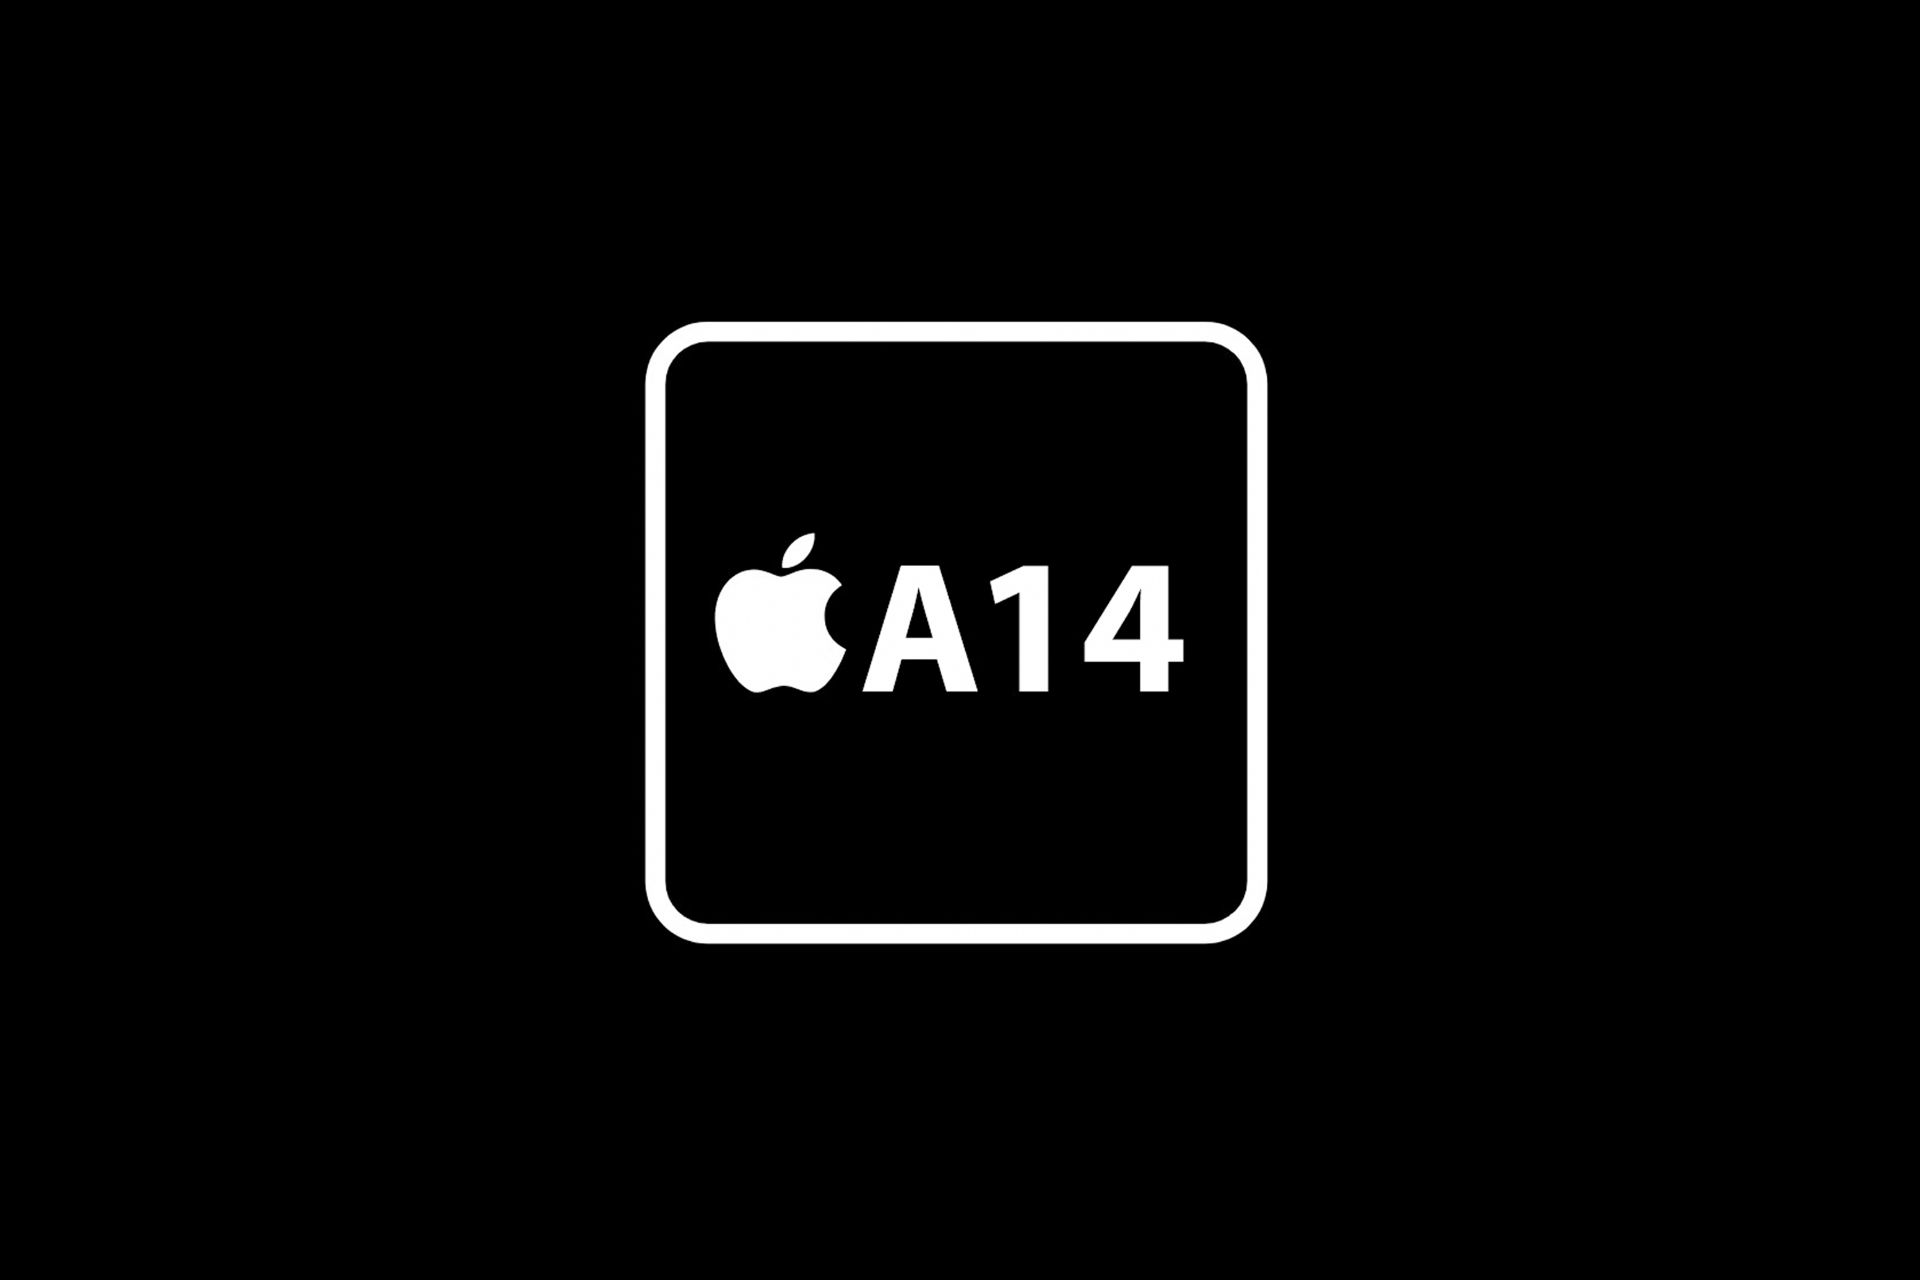 لوگو ای 14 بایونیک اپل / Apple A14 Bionic